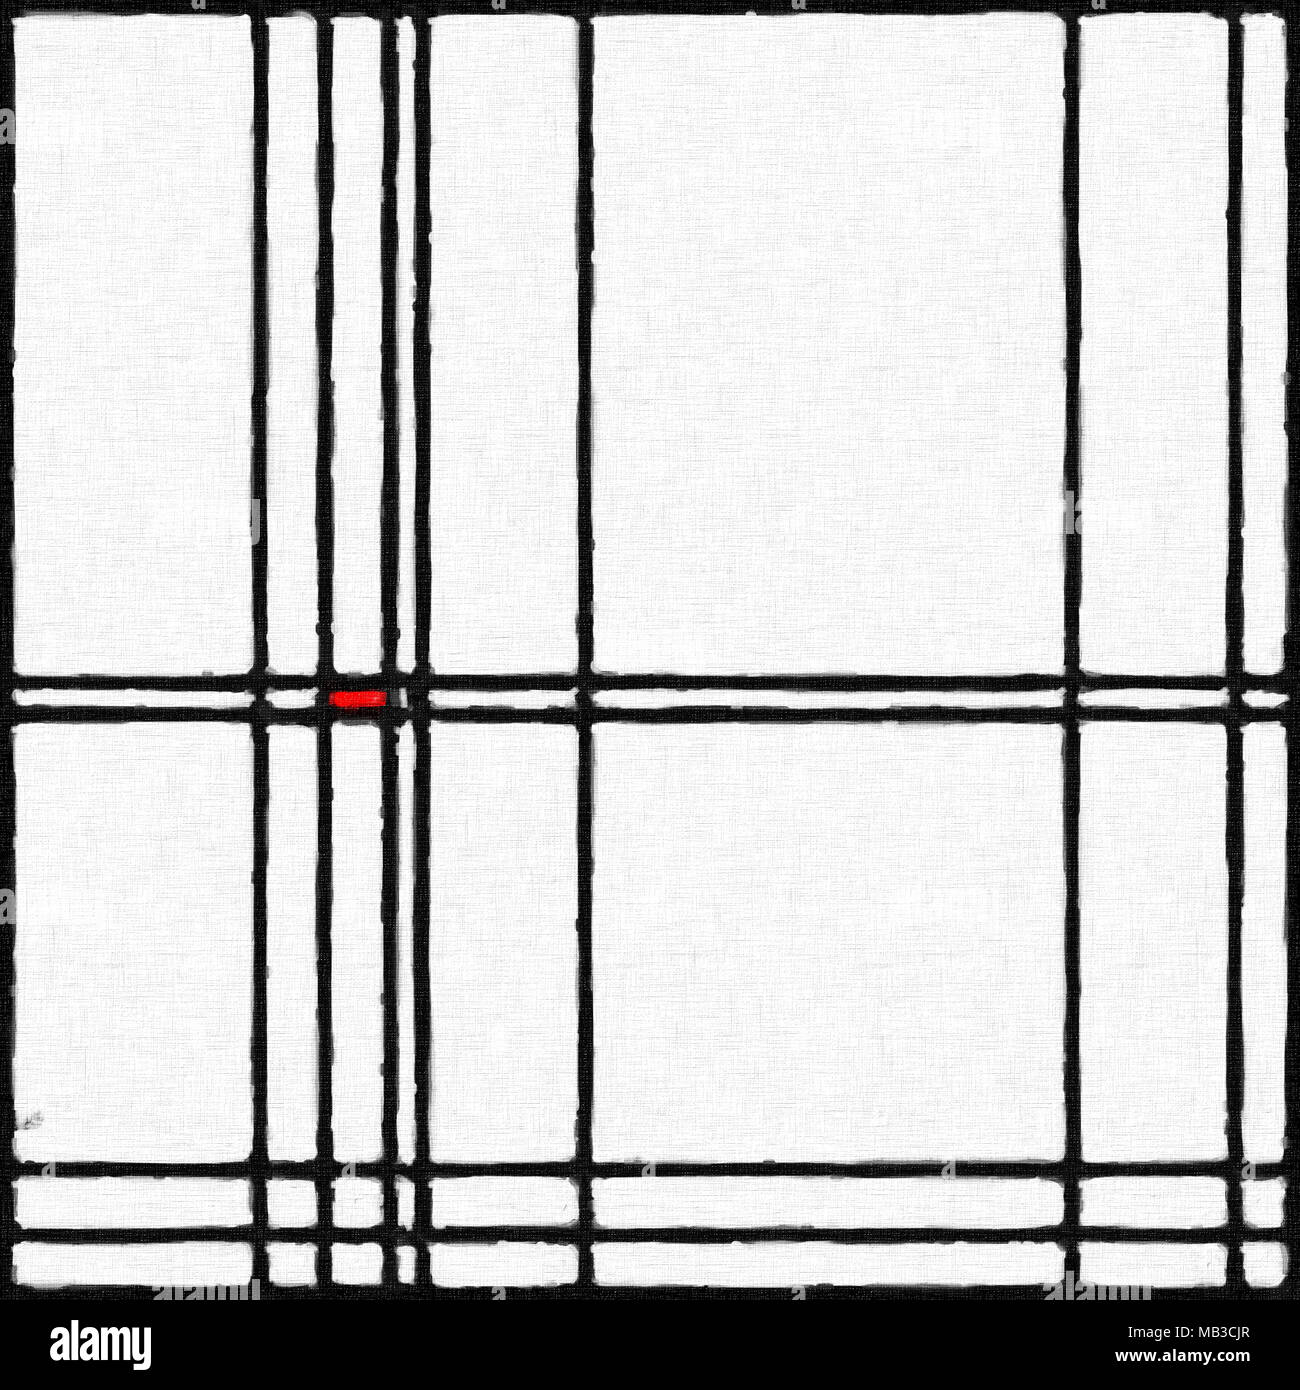 Résumé de peinture numérique moderne dans le style de Piet Mondrian, modèle sans couture Banque D'Images